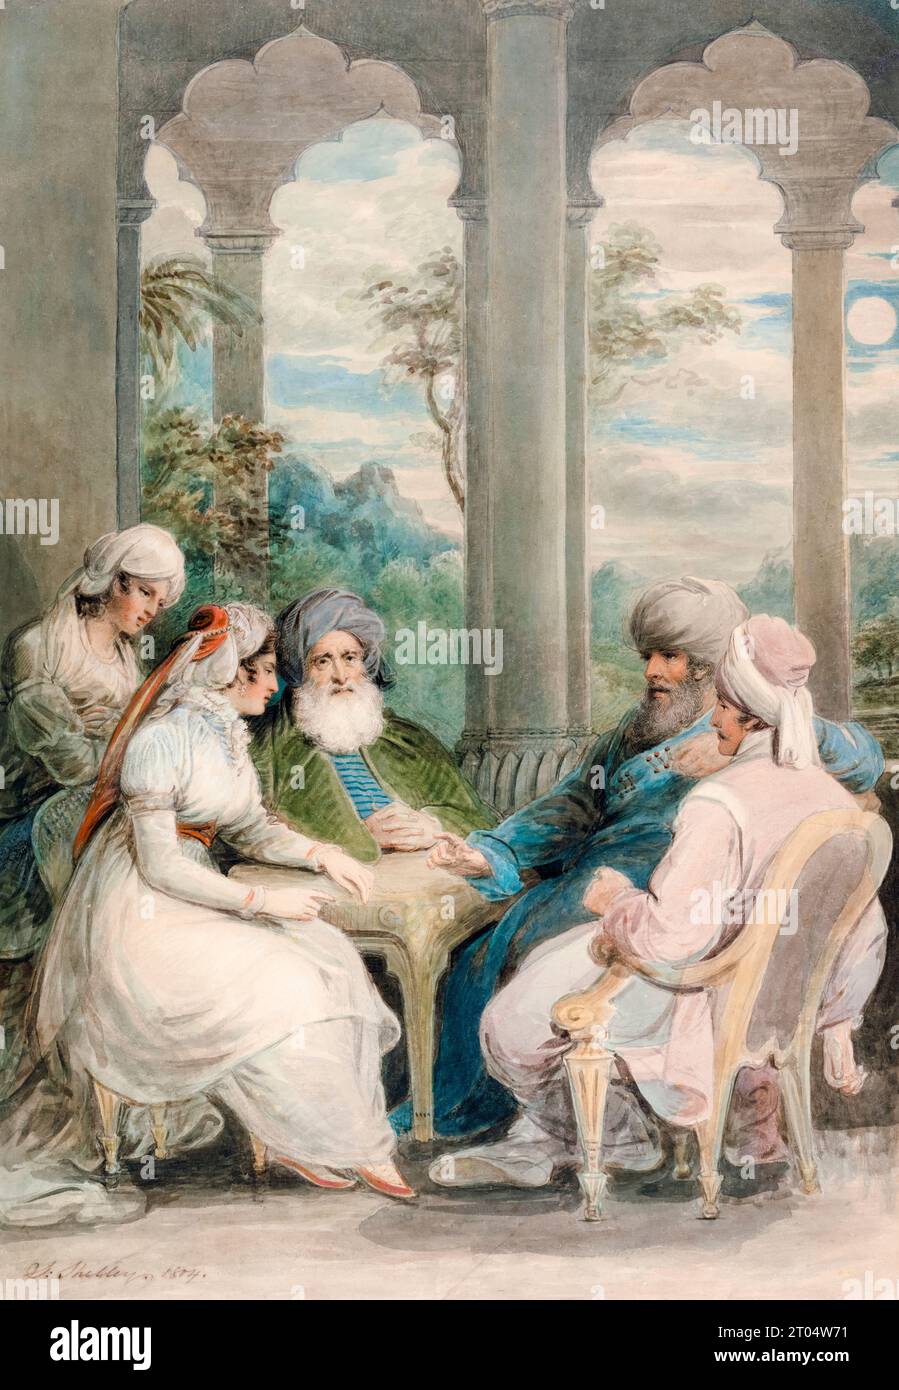 Il principe Rasselas e sua sorella conversano nel loro Palazzo d'Estate sulle rive del Nilo, pittura ad acquerello con gouache e gesso di Samuel Shelley, 1804 Foto Stock